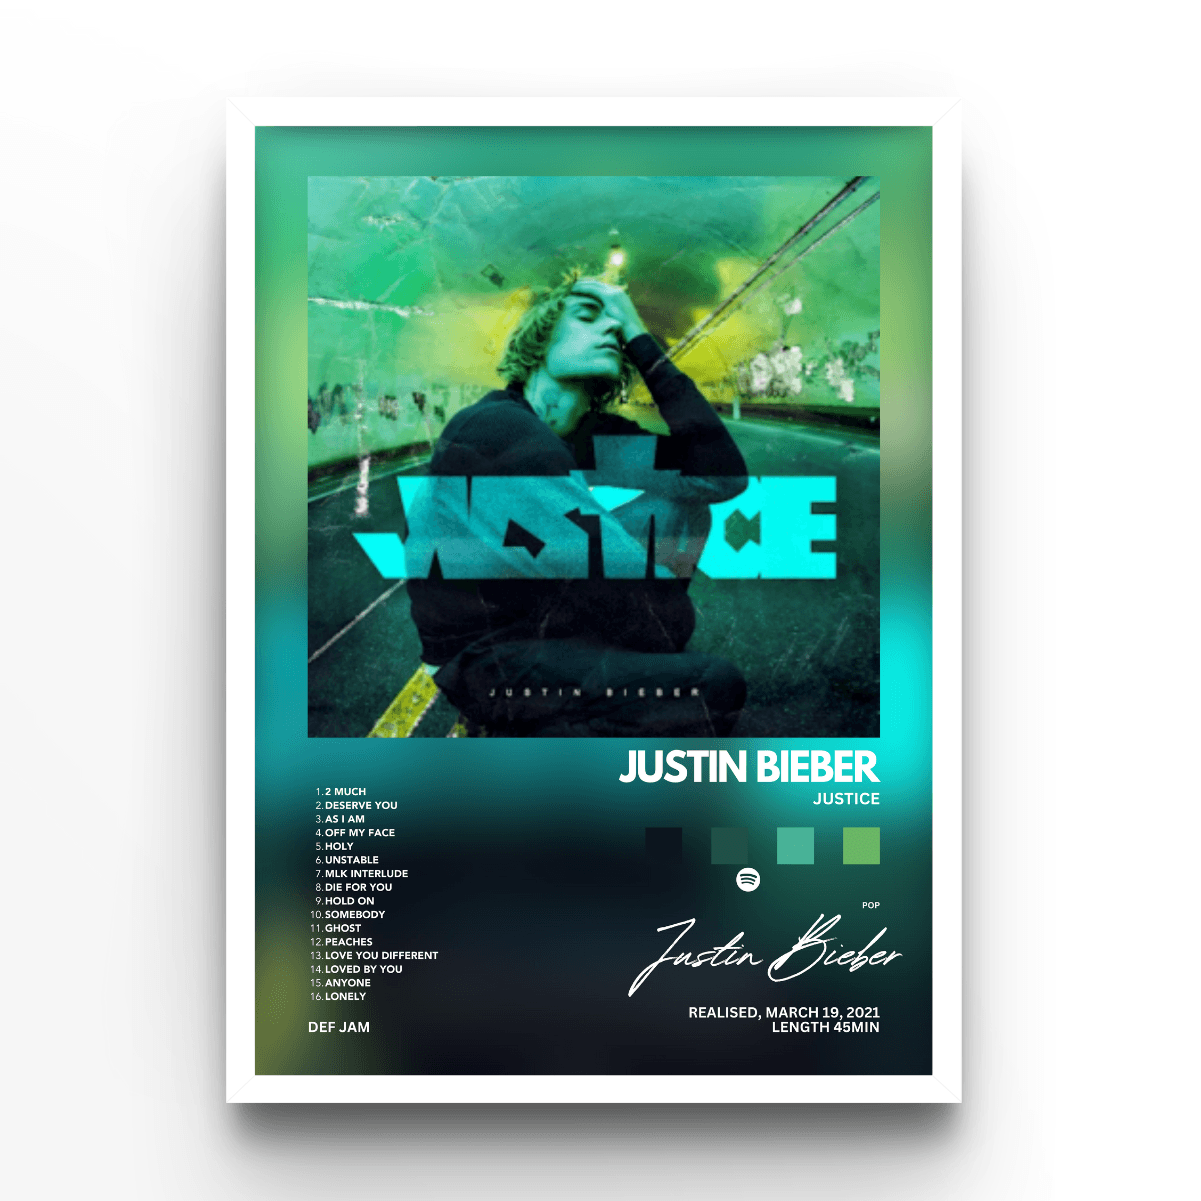 Justin Bieber Album - A4, A3, A2 Posters Base - Poster Print Shop / Art Prints / PostersBase